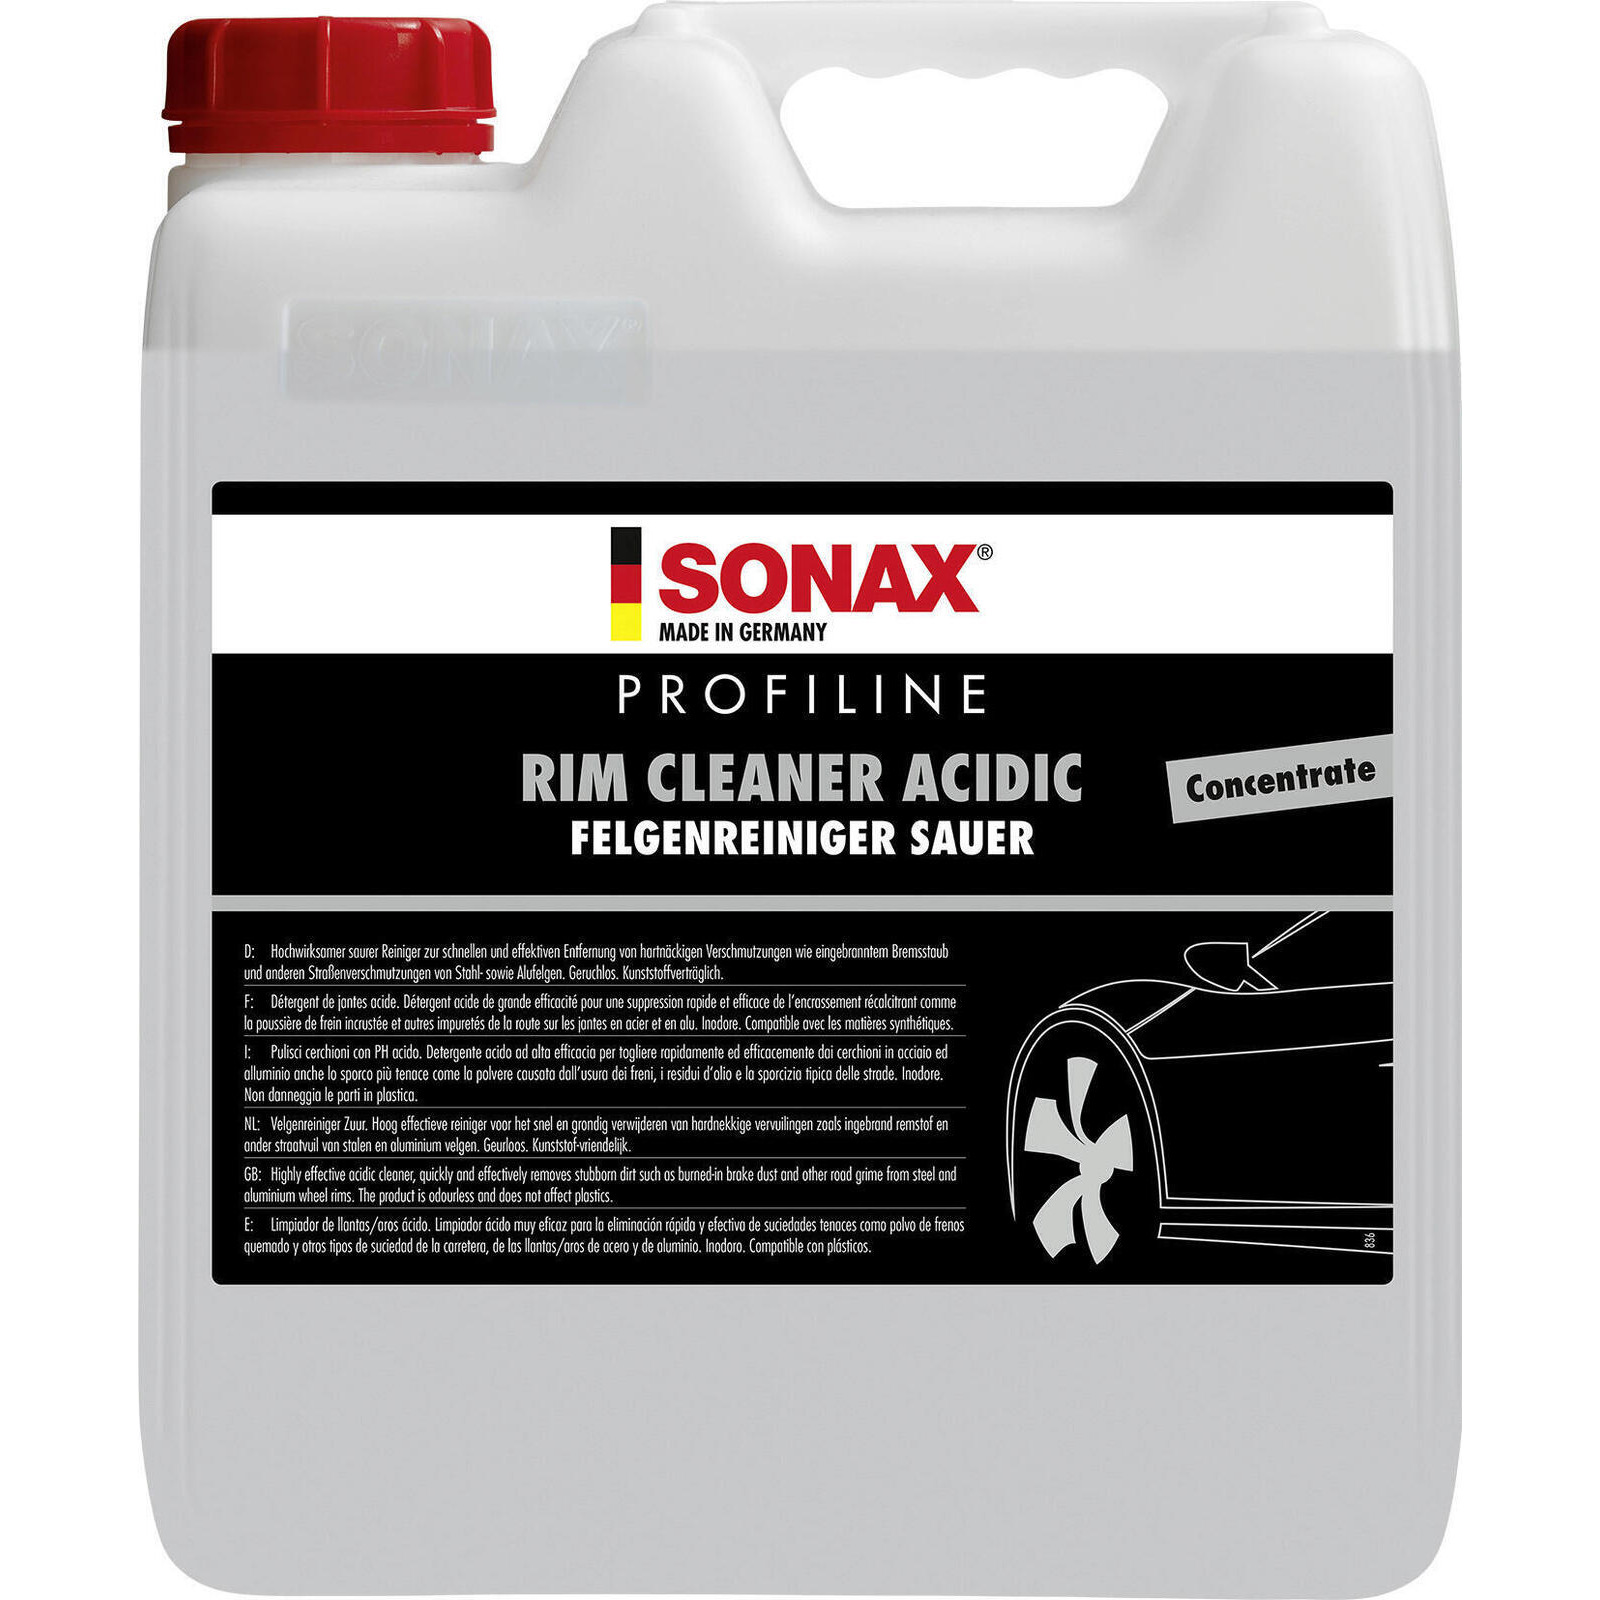 SONAX Rim Cleaner PROFILINE Rim Cleaner acidic Conentrate